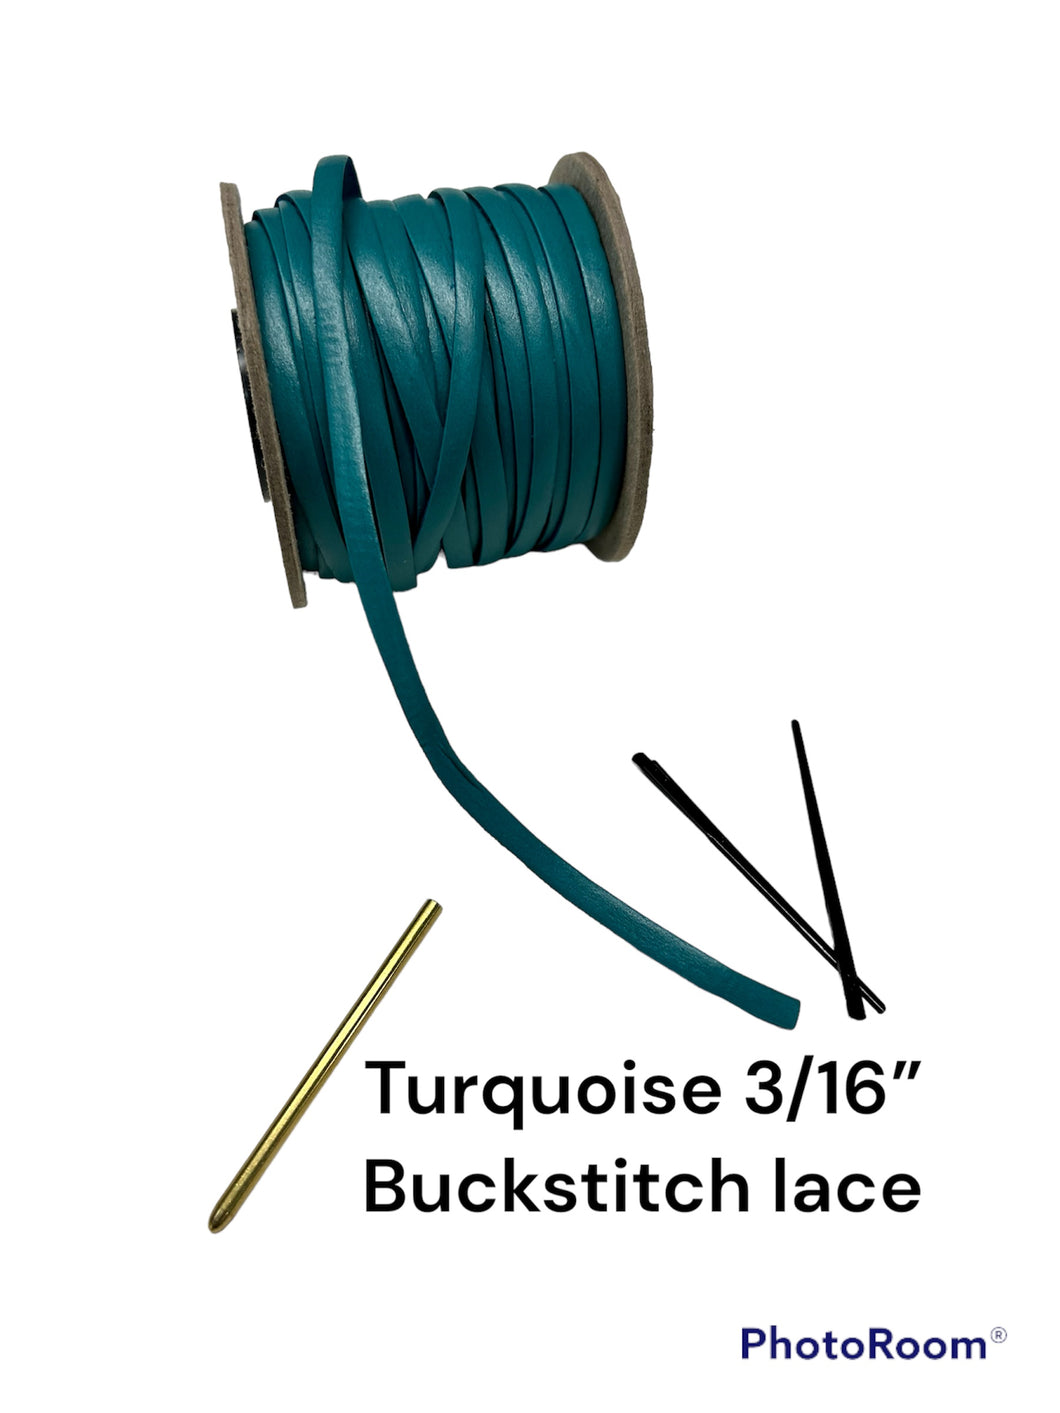 Turquoise 3/16” Buckstitch lace